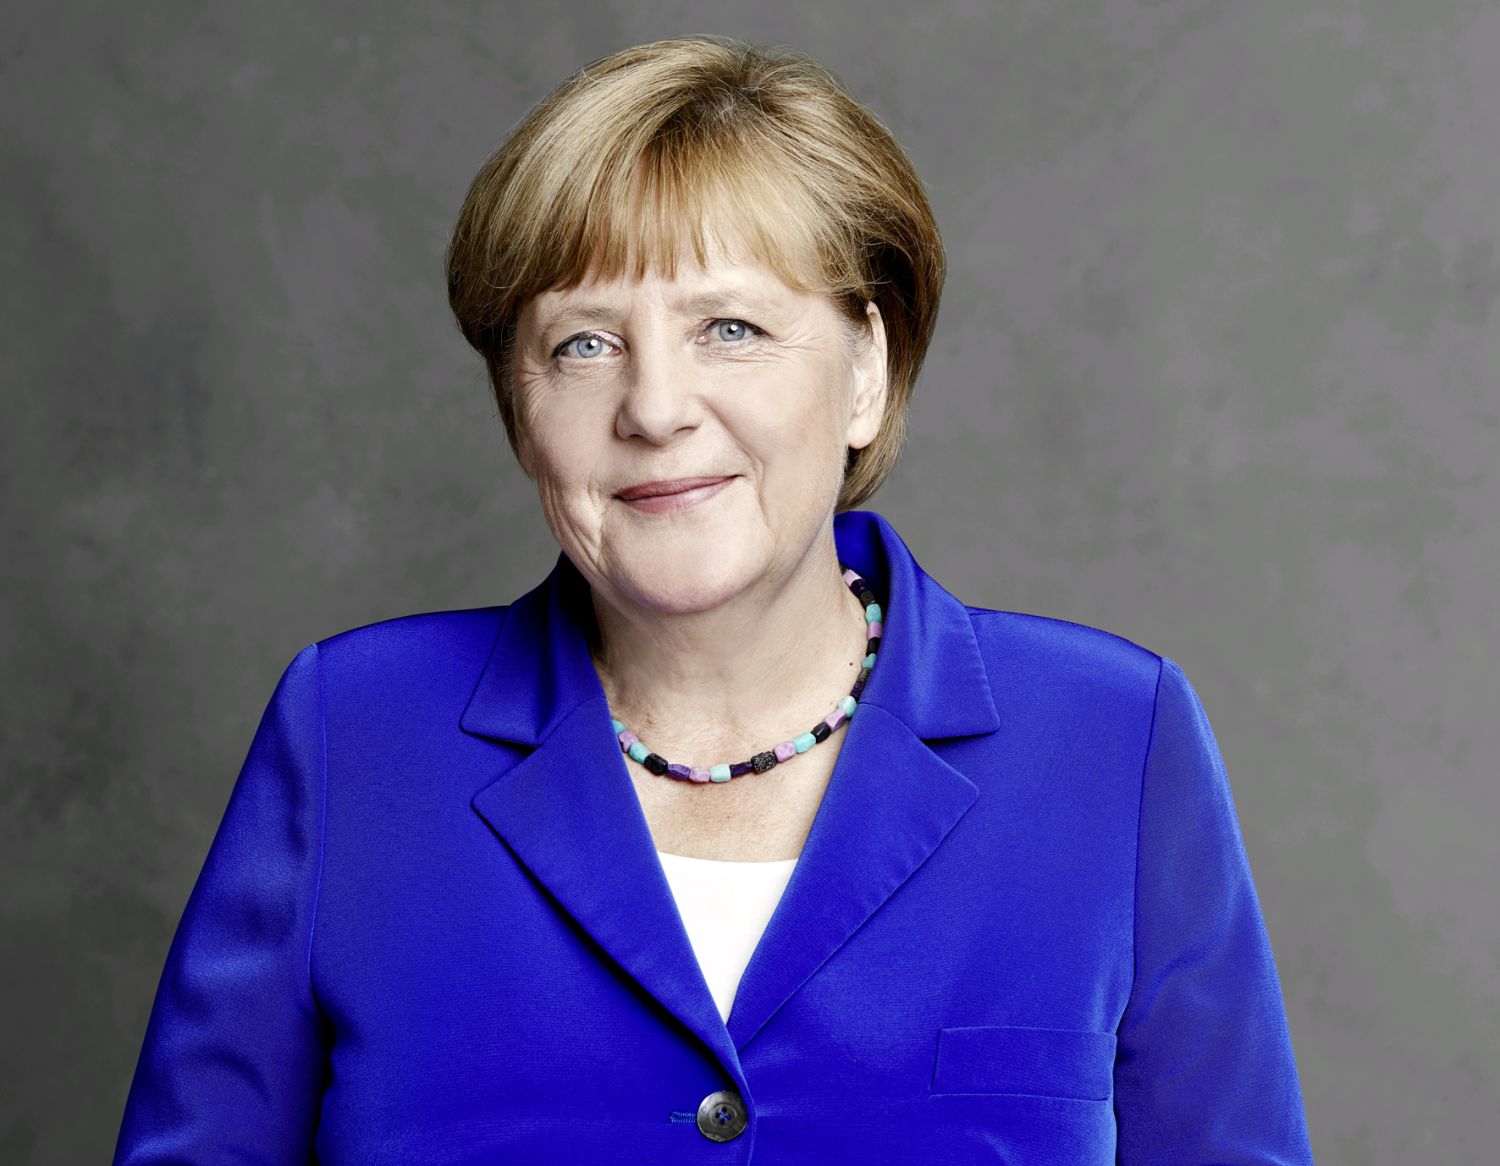 El legado de Merkel